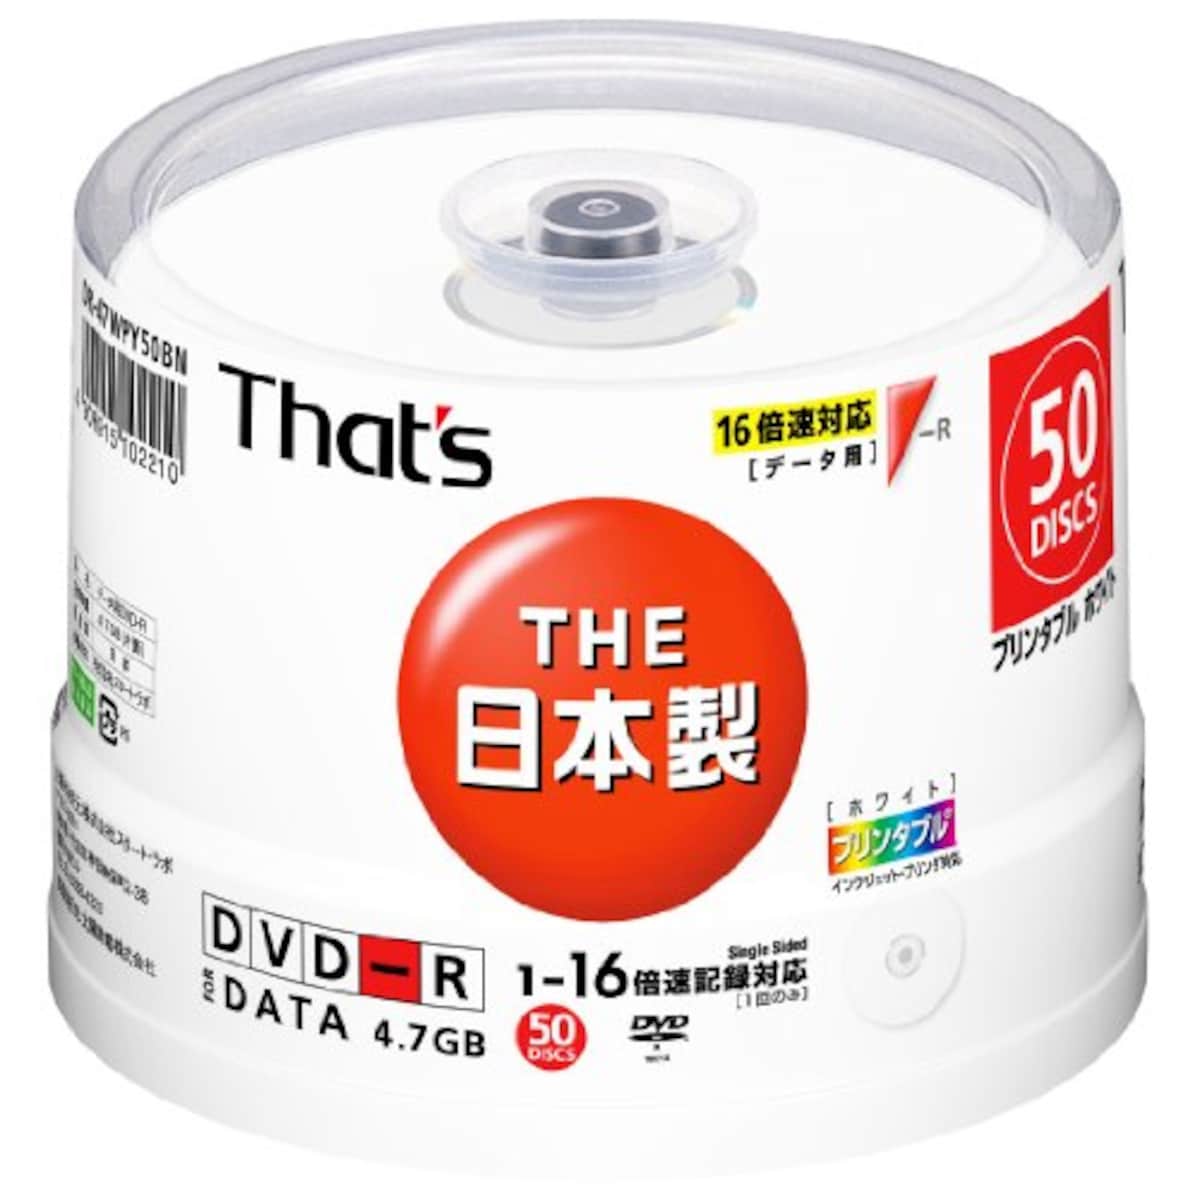 That's DVD-Rデータ用